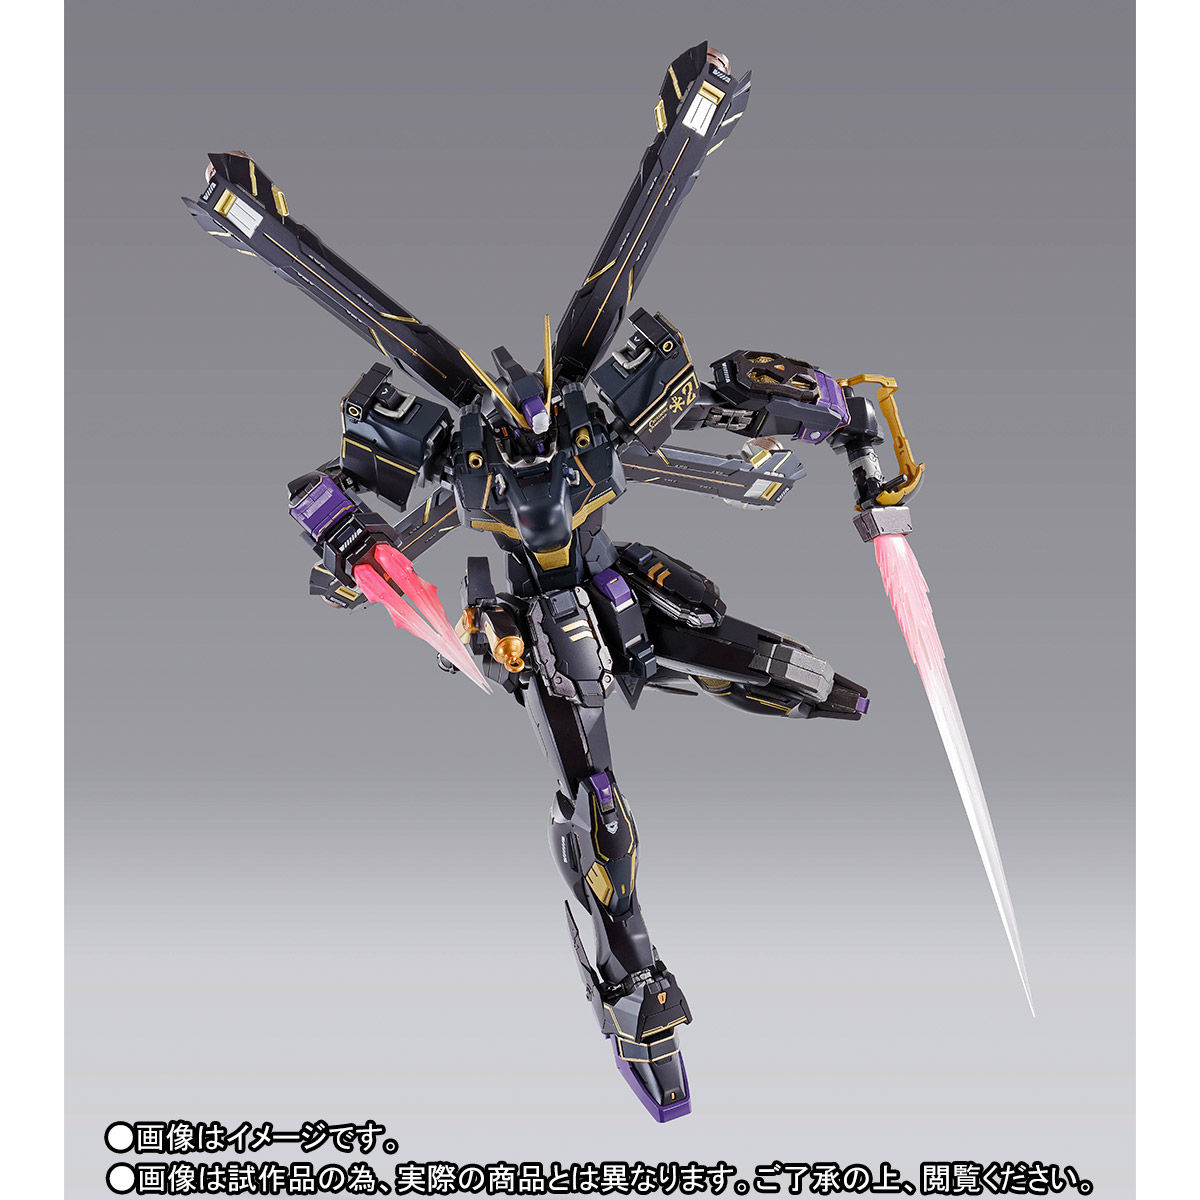 【限定販売】METAL BUILD『クロスボーン・ガンダムX2』機動戦士クロスボーン・ガンダム 可動フィギュア-007